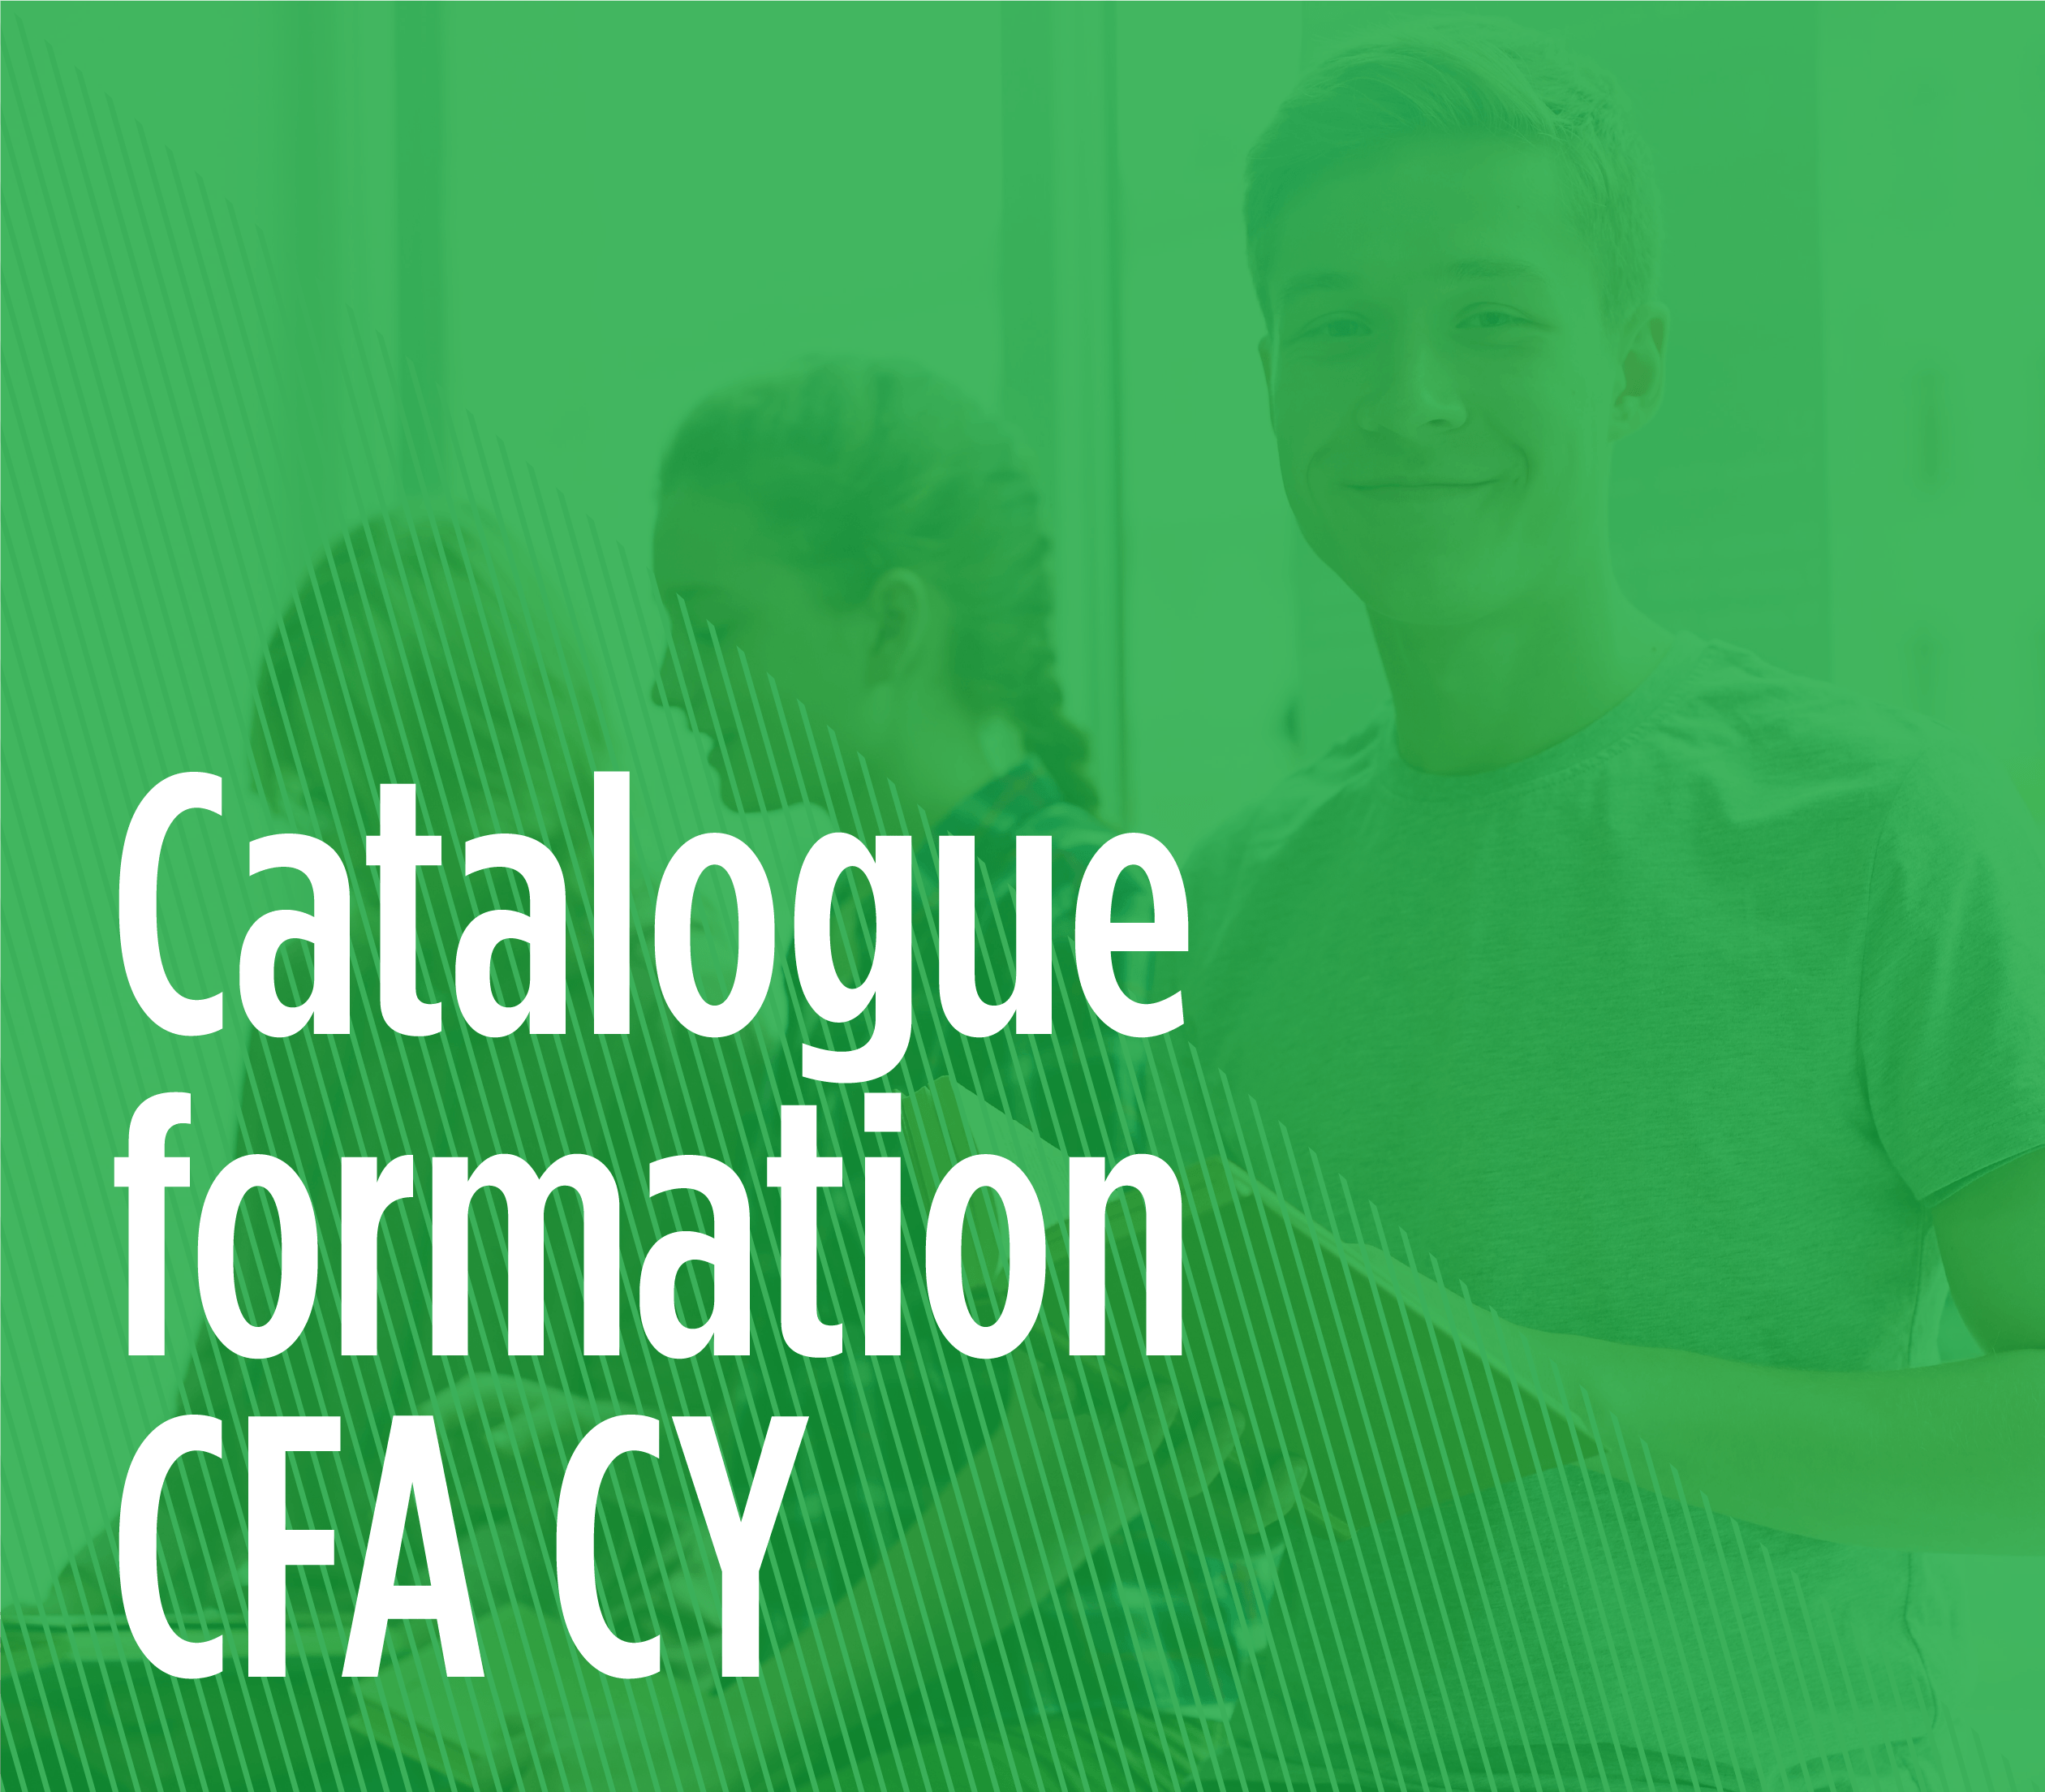 Télécharger le catalogue formation du CFA CY